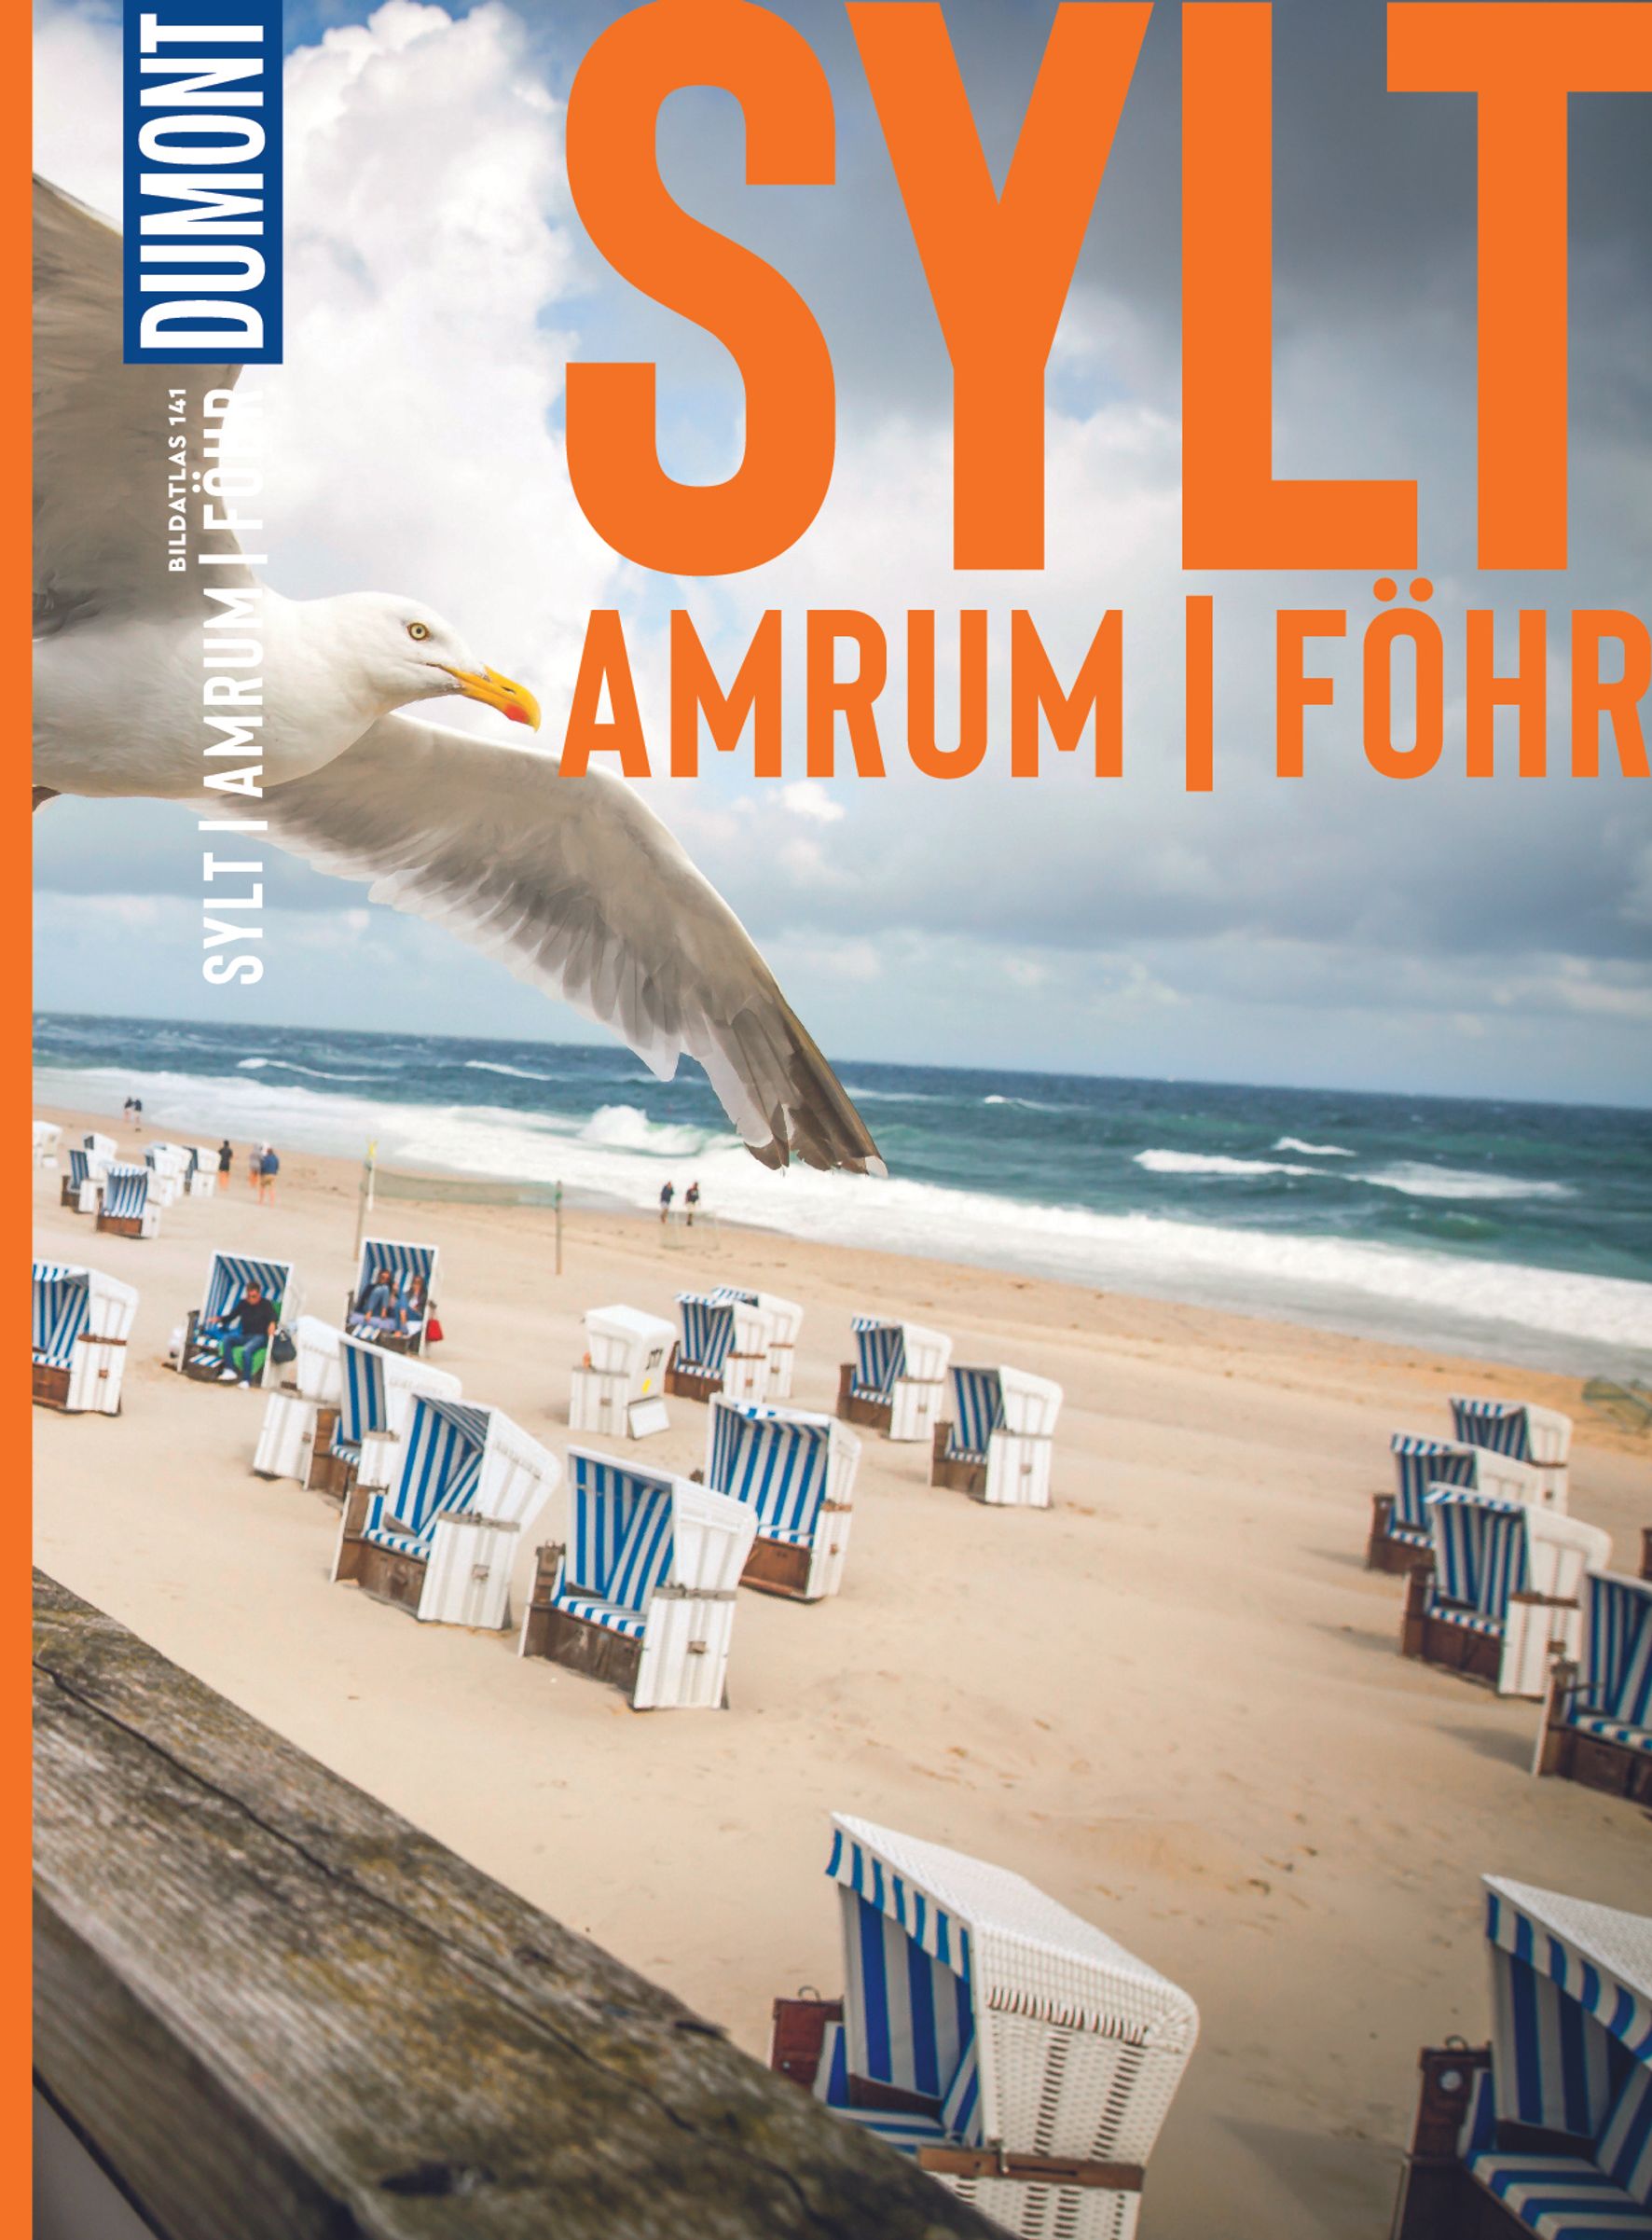 MAIRDUMONT Sylt, Amrum, Föhr (eBook)